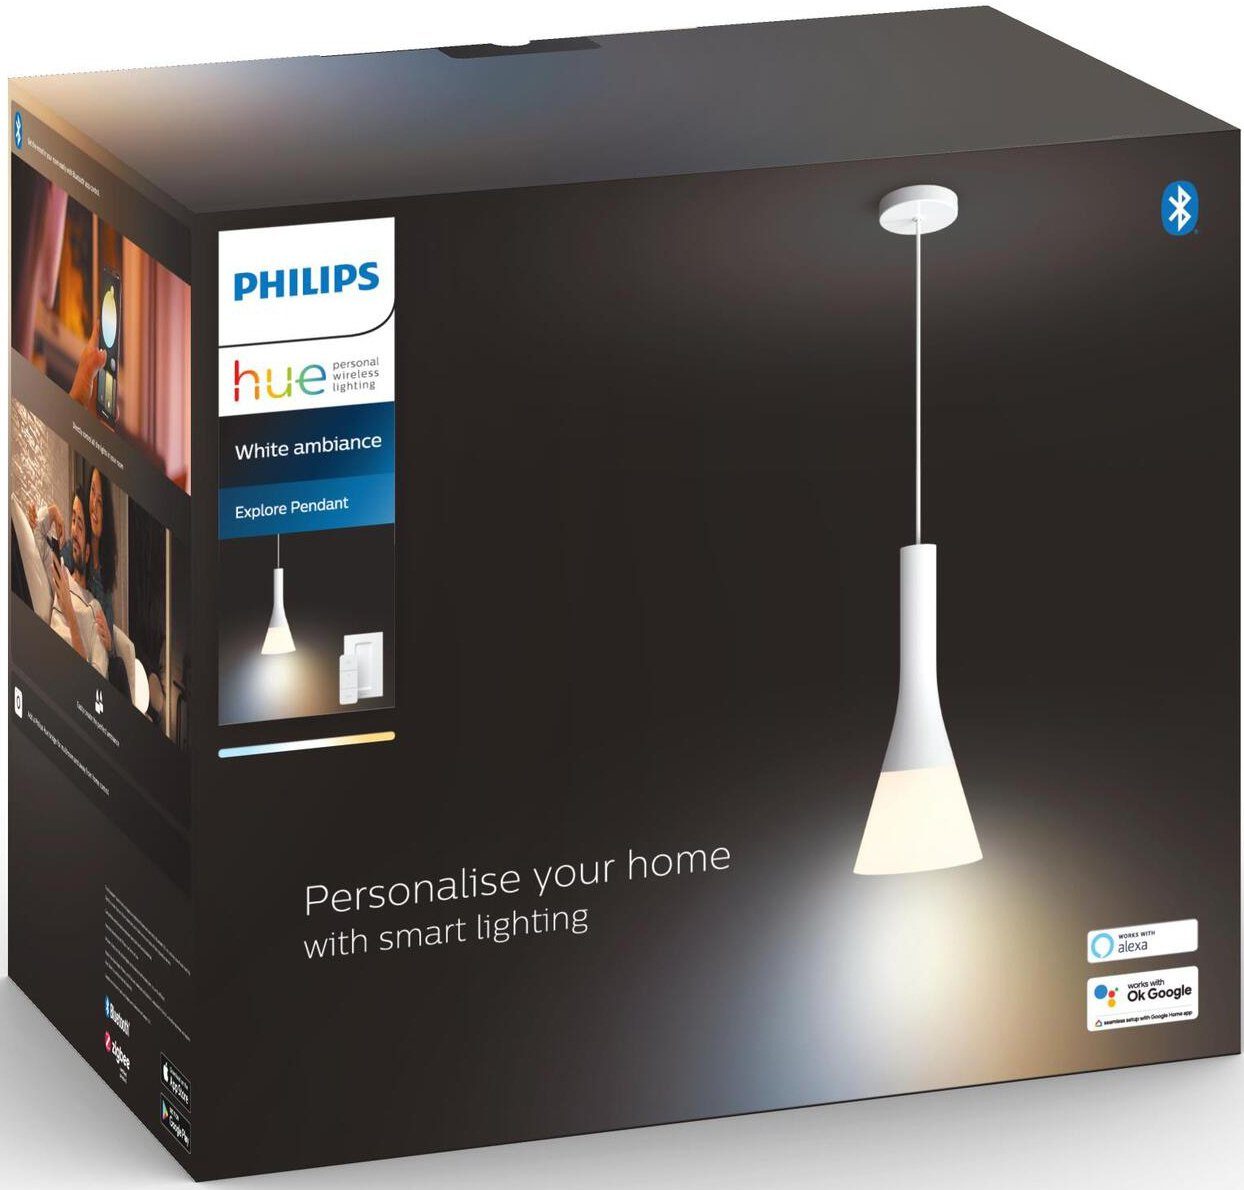 Philips Hue LED Warmweiß wechselbar, Explore, Pendelleuchte Leuchtmittel Dimmfunktion